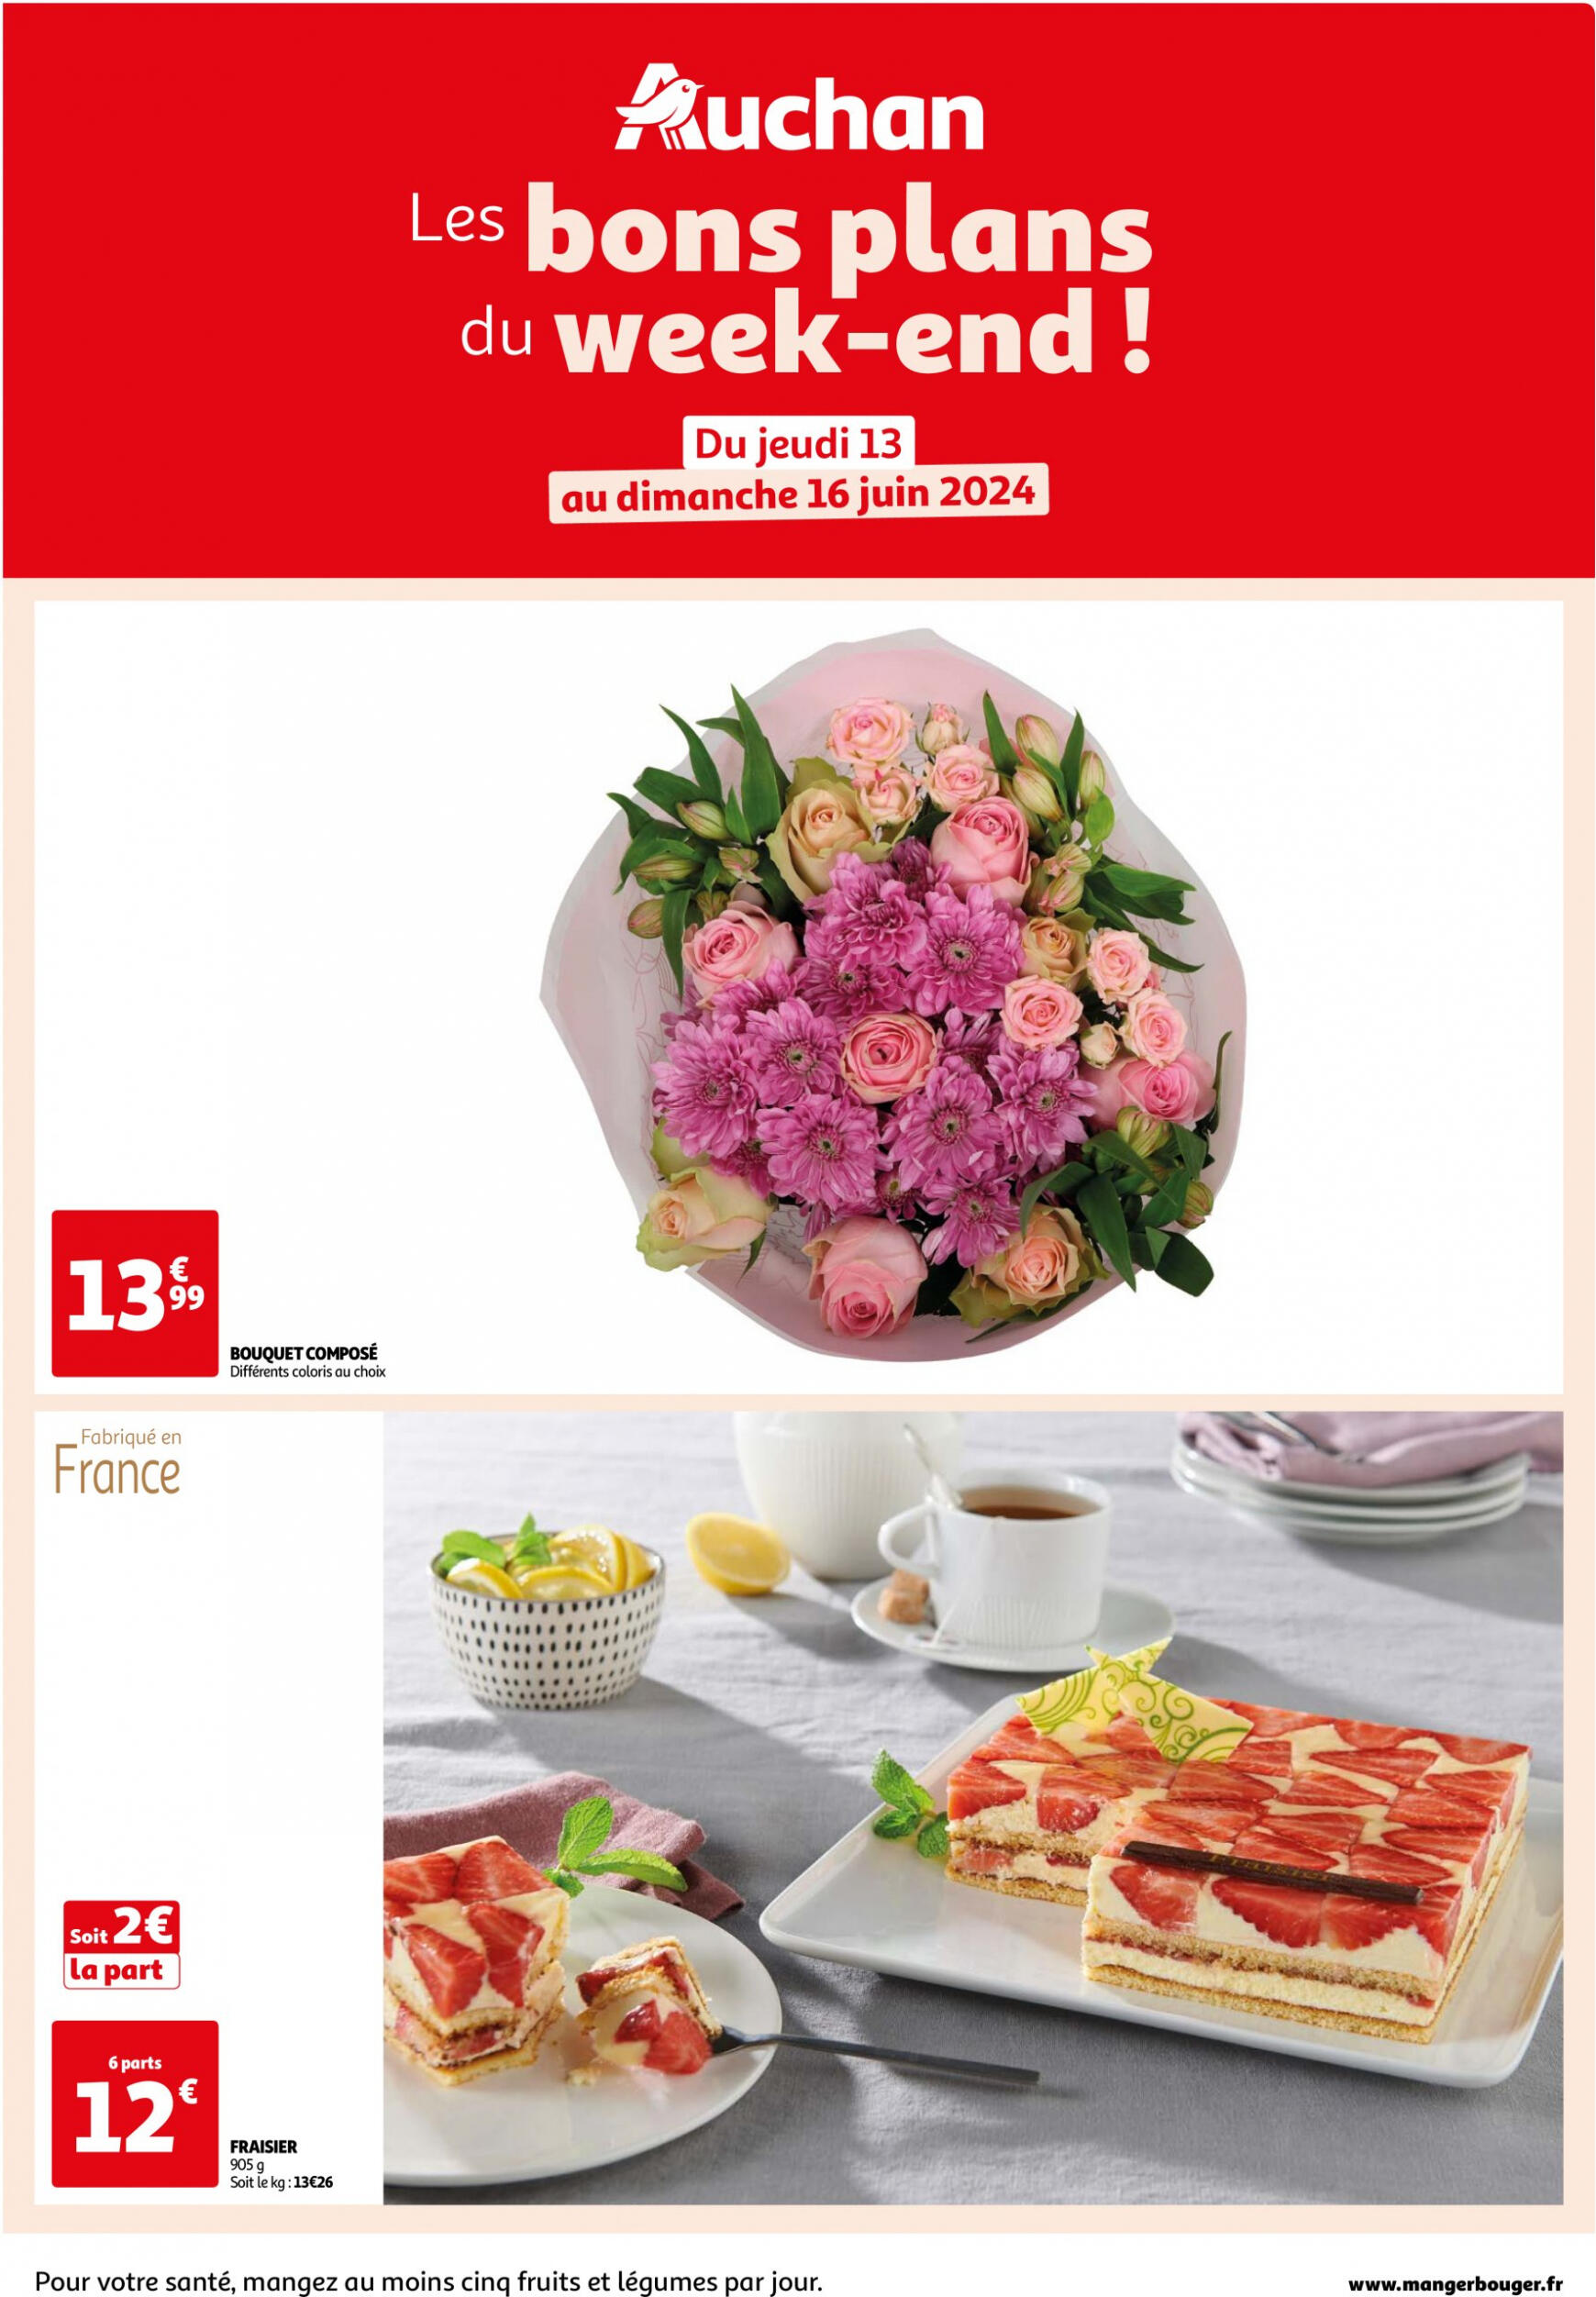 auchan - Prospectus Auchan - Les bons plans du week-end dans votre hyper ! actuel 13.06. - 16.06. - page: 1